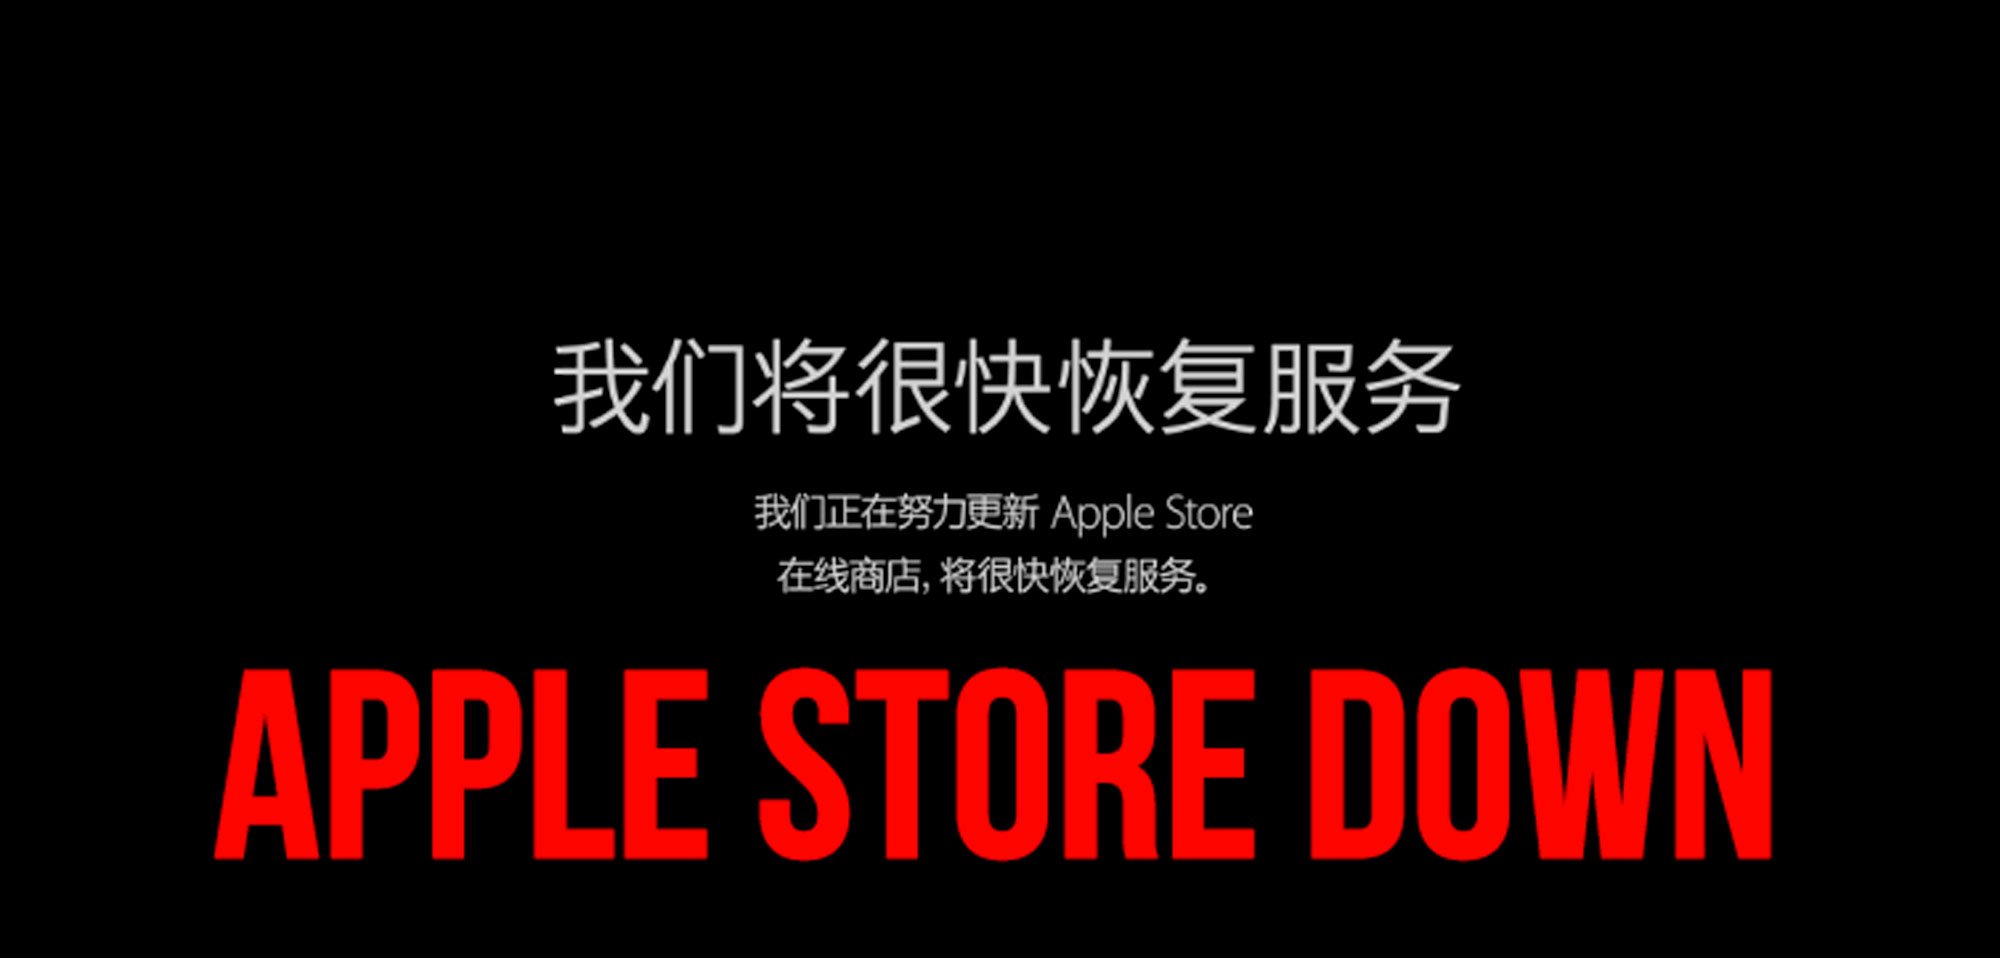 APPLE STORE DOWN: Vorbereitung iPhone 6S Verkauf heute ab 09:01 Uhr 5